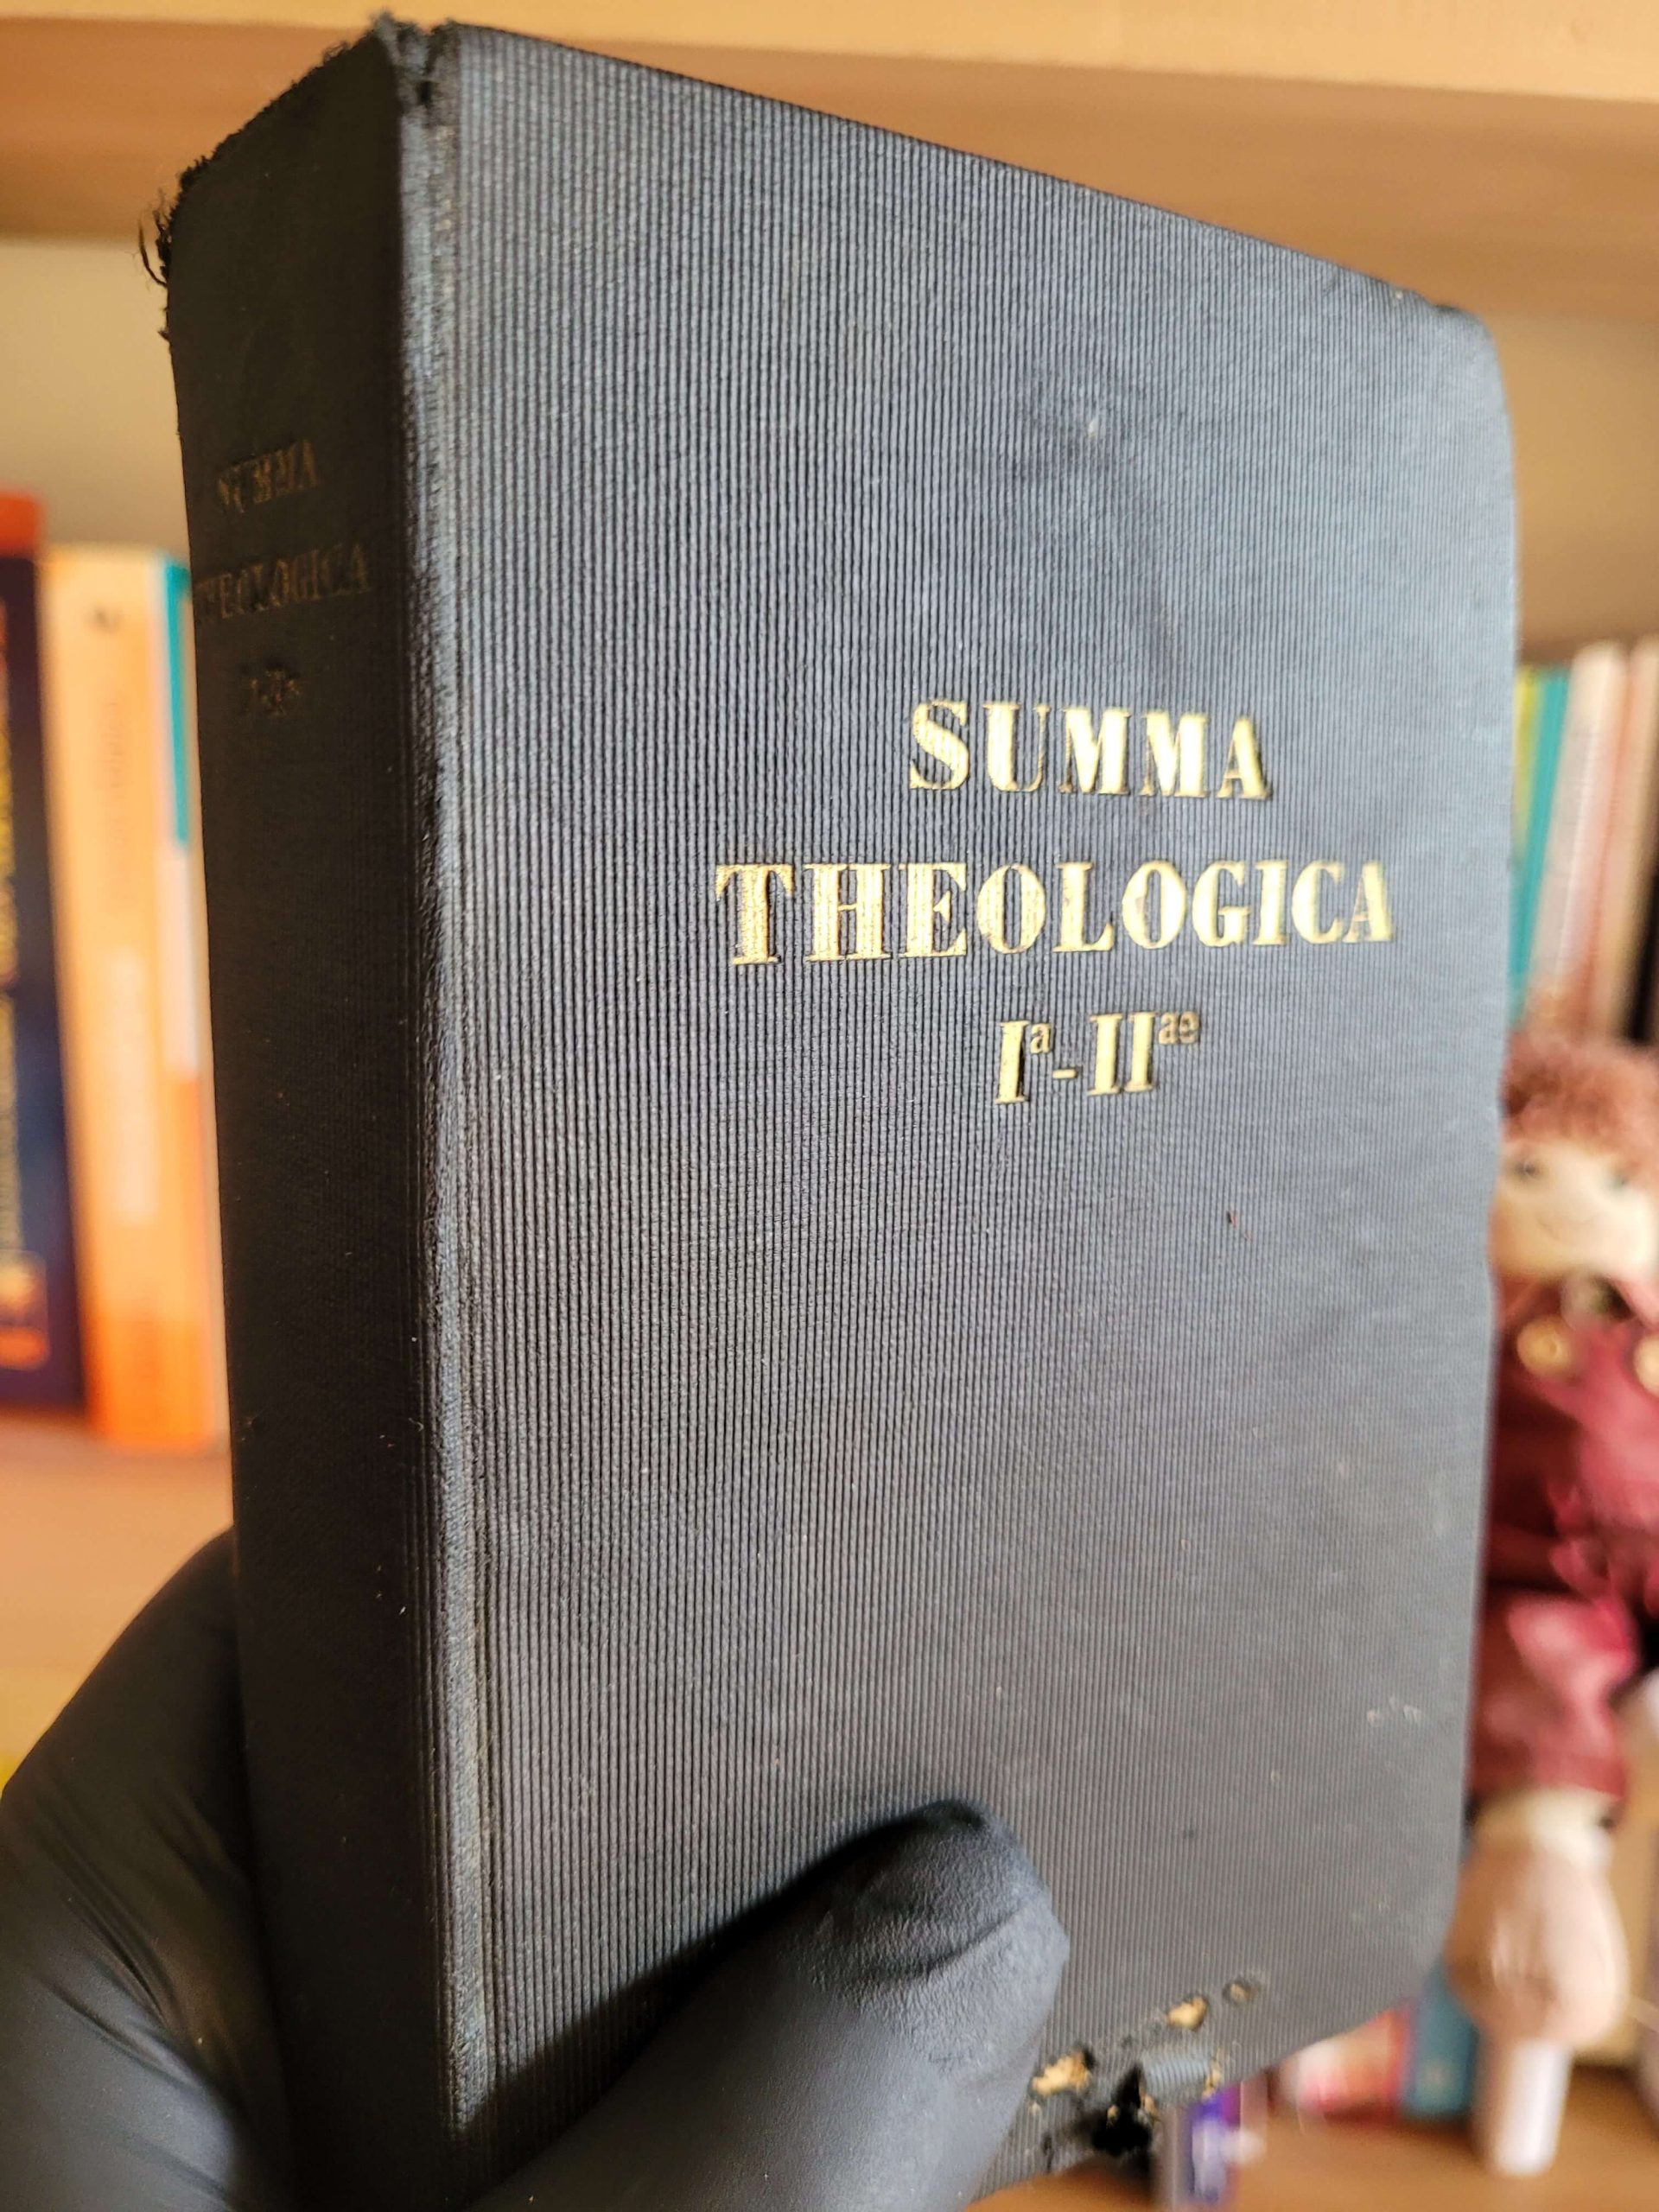 Summa theologica (1926)